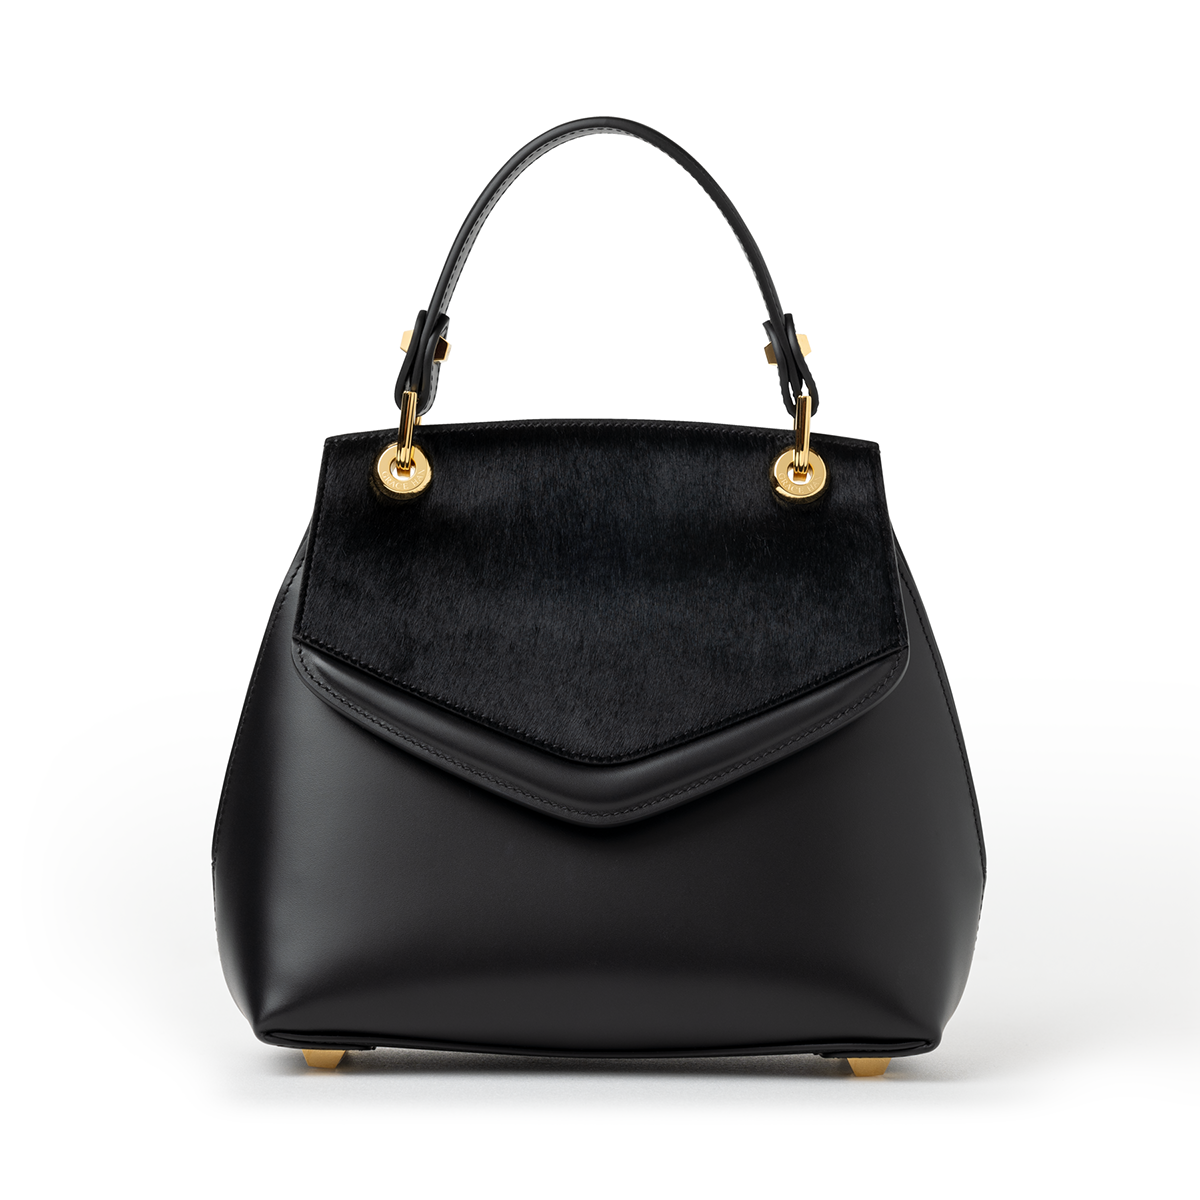 Black handbag with gold fastenings